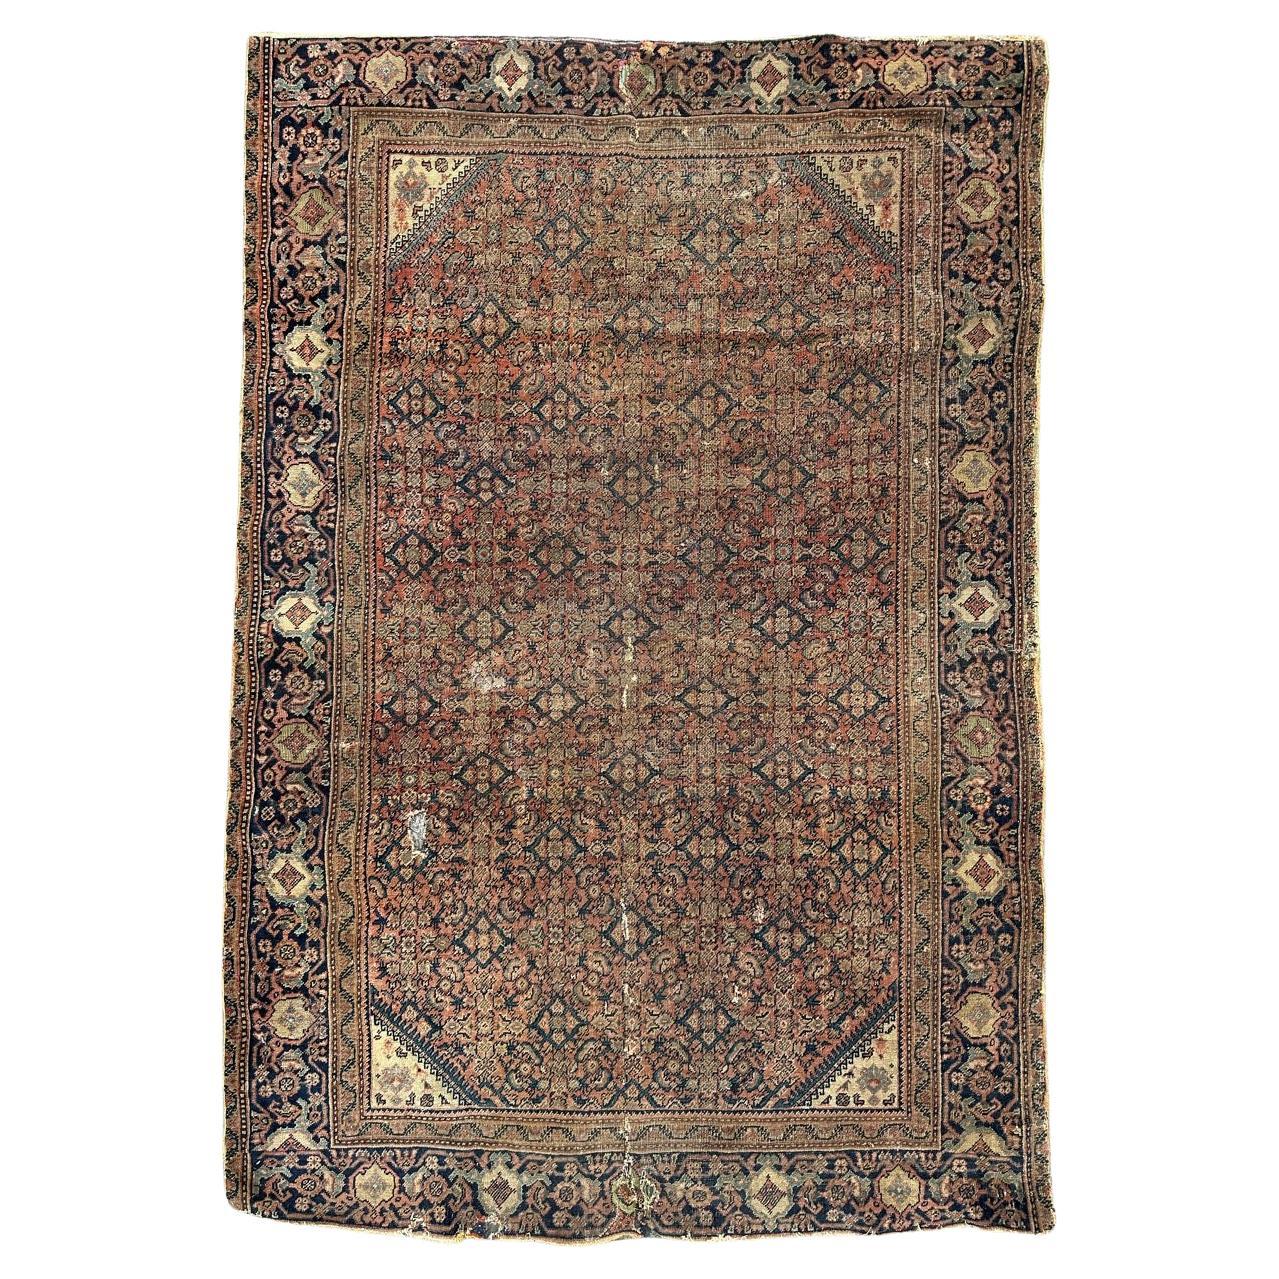 Bobyrug’s distressed antique Farahan rug For Sale